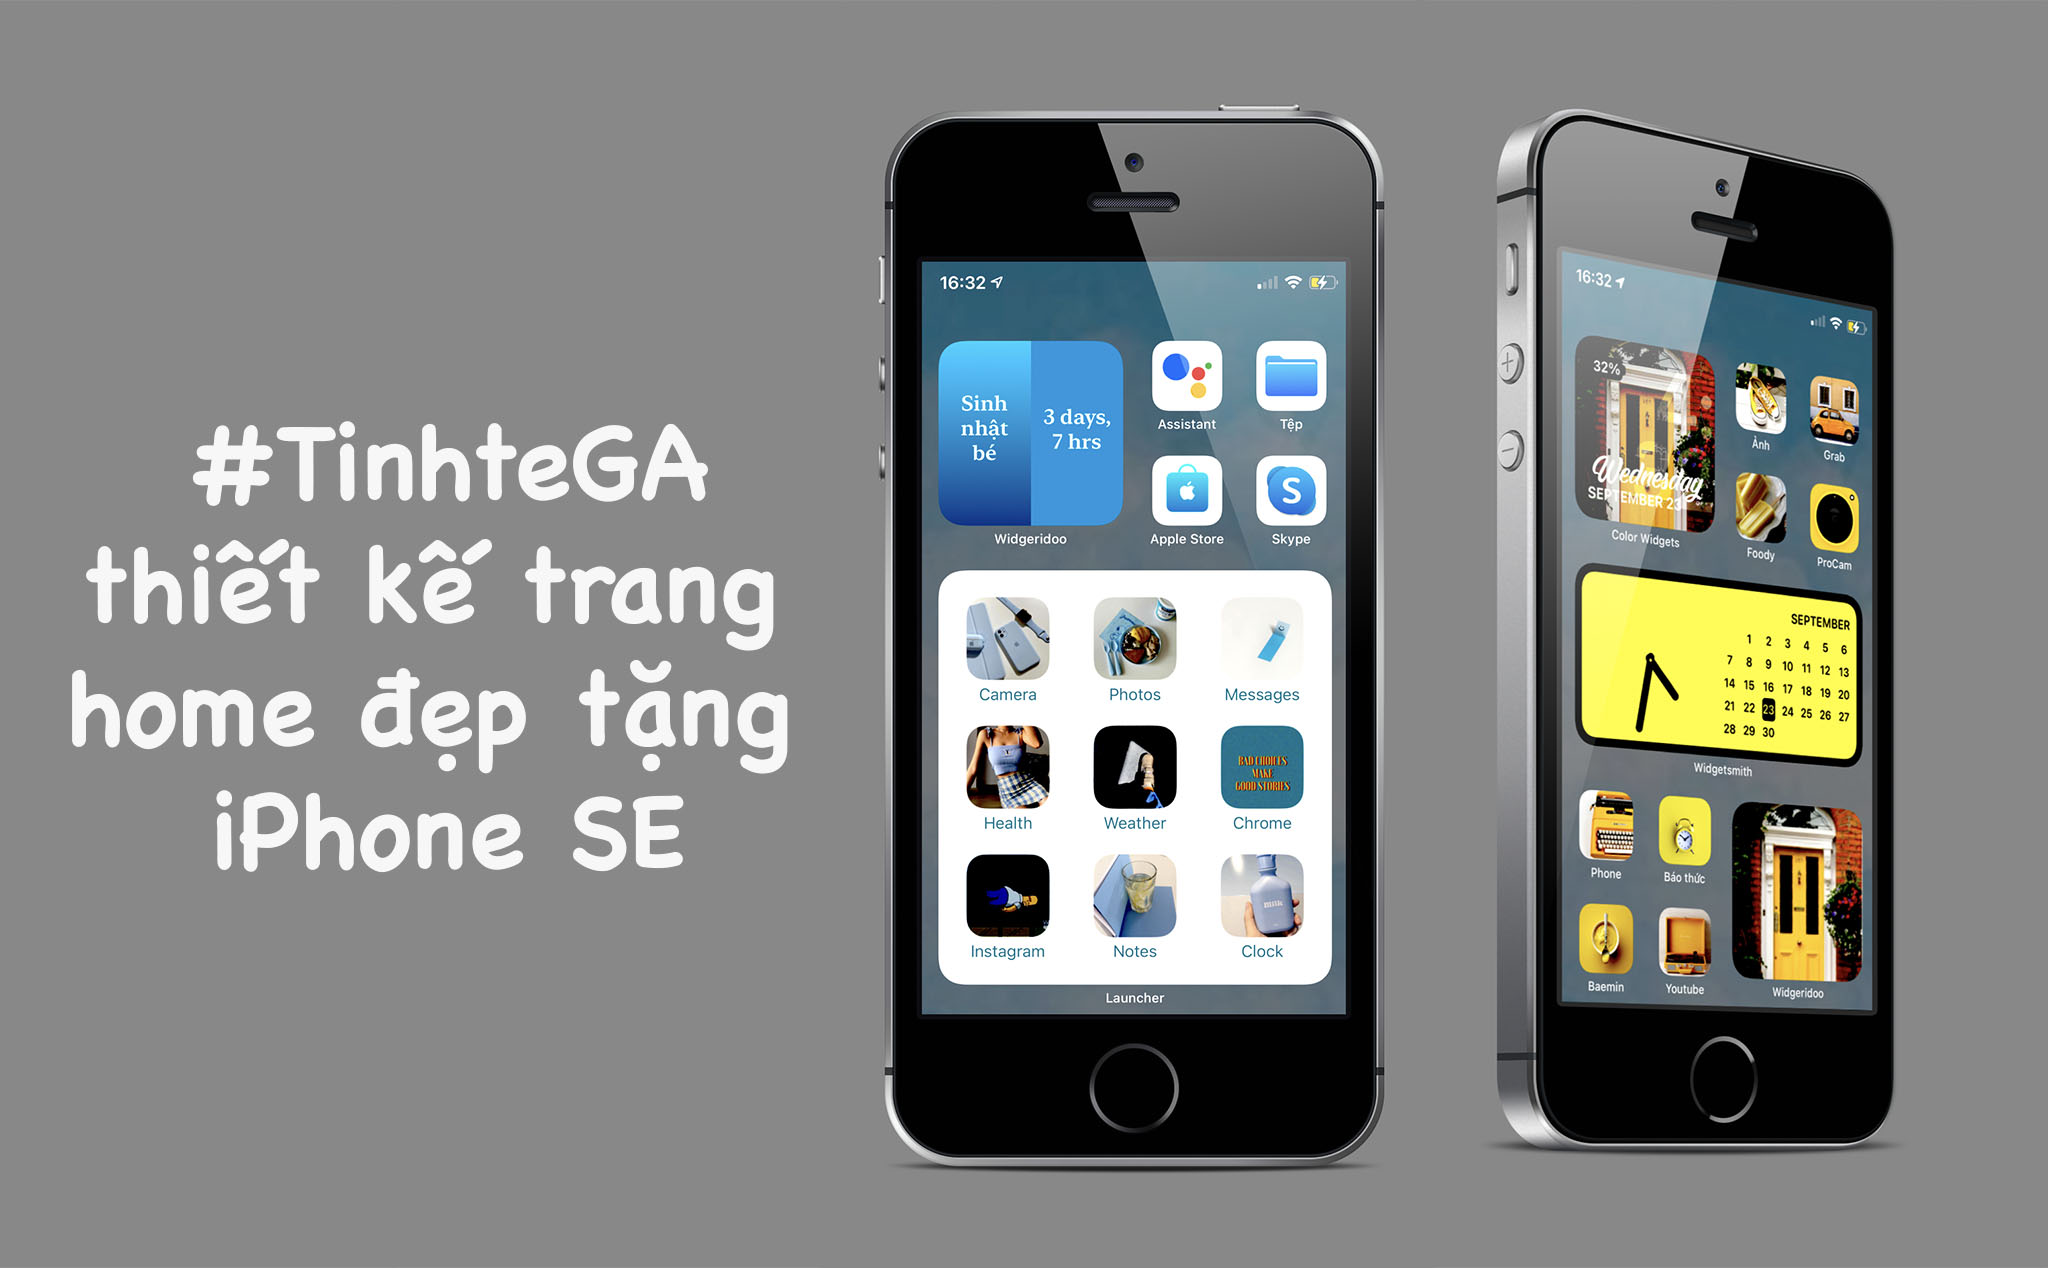 #TinhteGA: tặng iPhone SE cho thiết kế homesreen đẹp